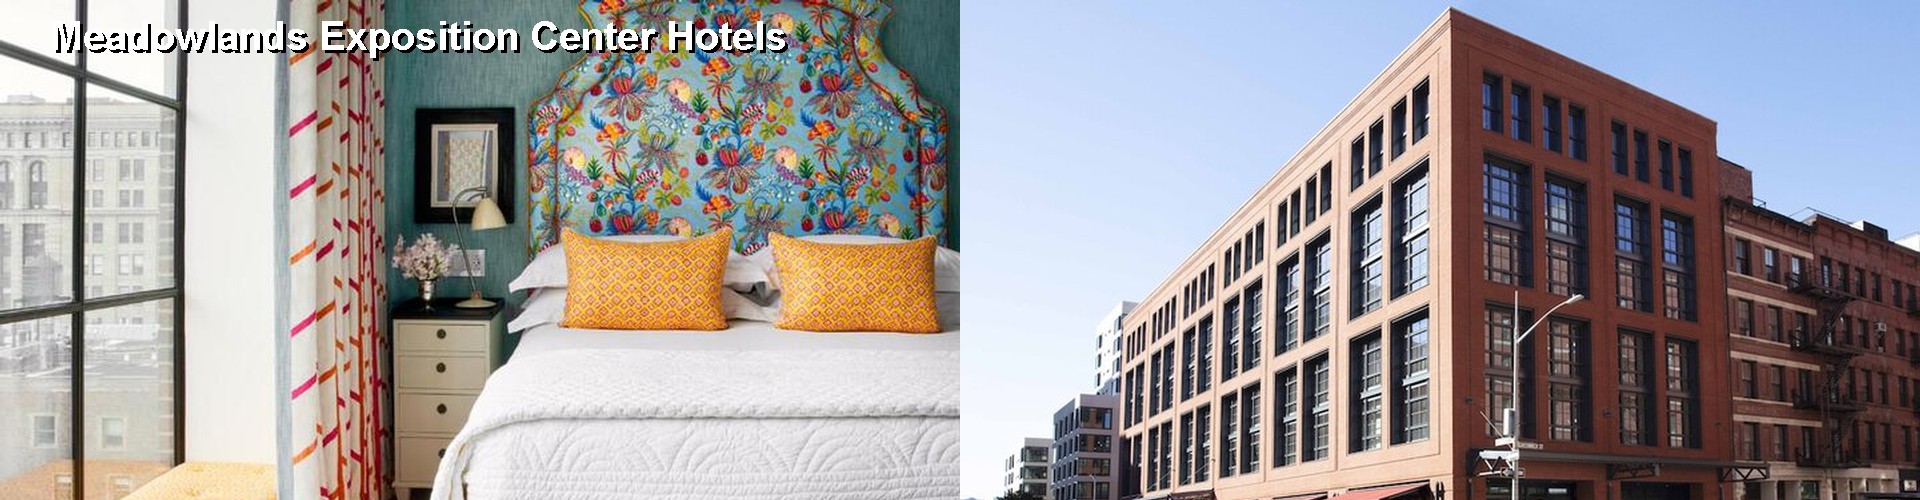 5 Best Hotels near Meadowlands Exposition Center